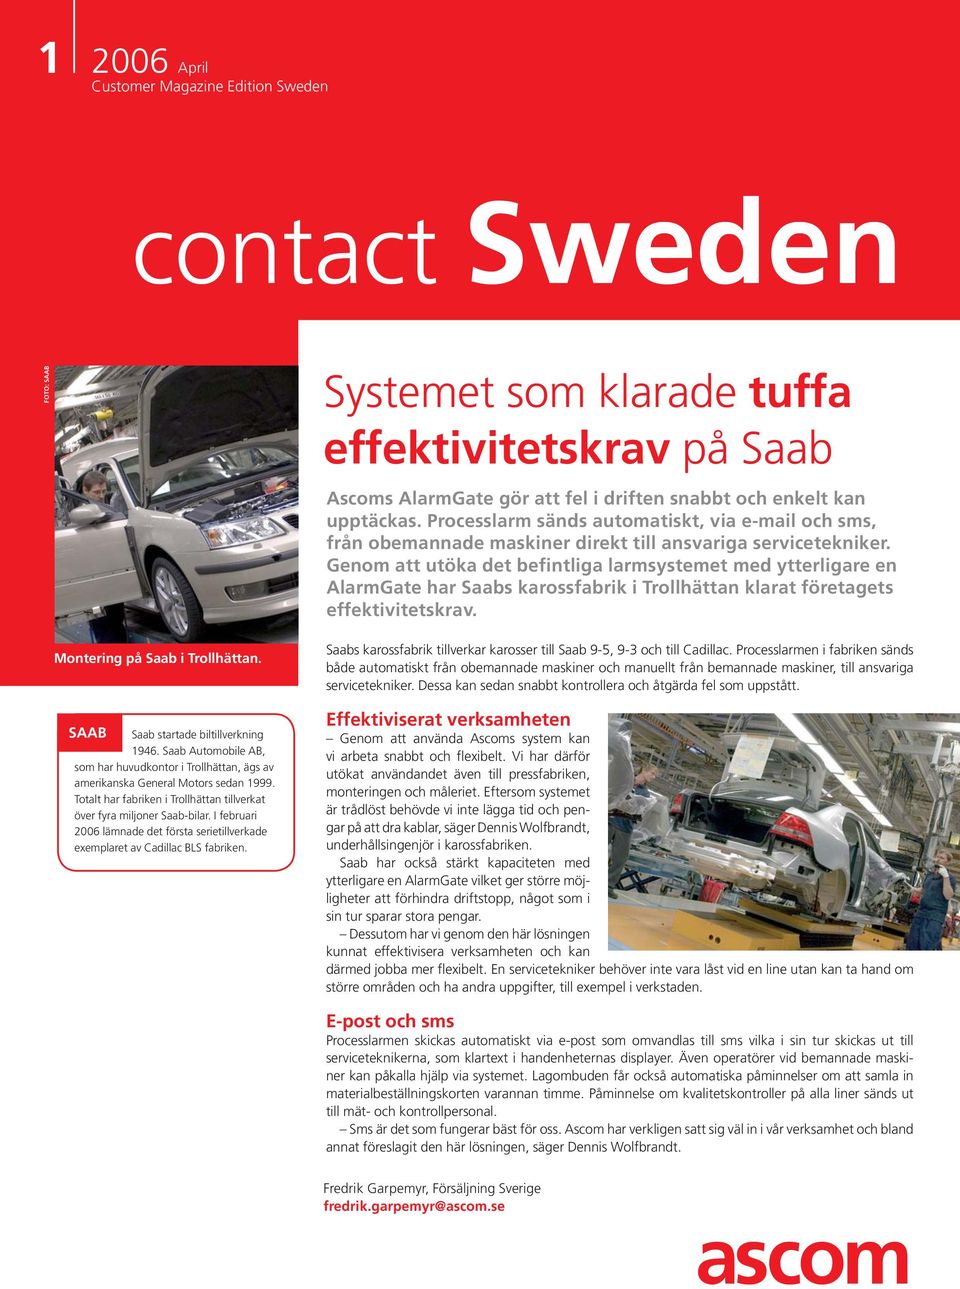 Genom att utöka det befintliga larmsystemet med ytterligare en AlarmGate har Saabs karossfabrik i Trollhättan klarat företagets effektivitetskrav. Montering på Saab i Trollhättan.